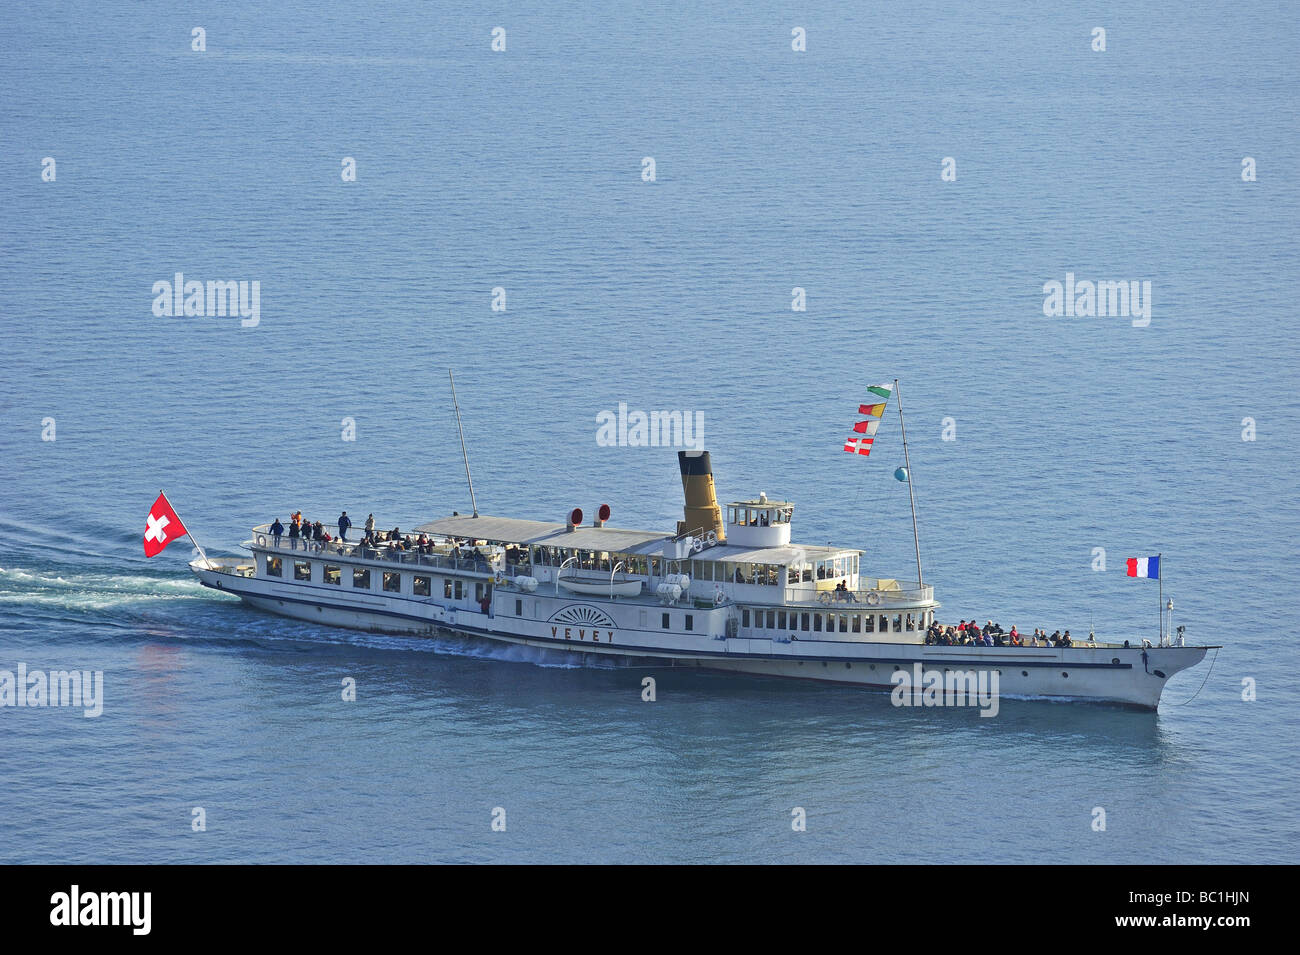 Le bateau à vapeur "Vevey Suisse' sur le Lac Léman. L'emplacement pour un texte sur l'eau au-dessus du bateau. Banque D'Images